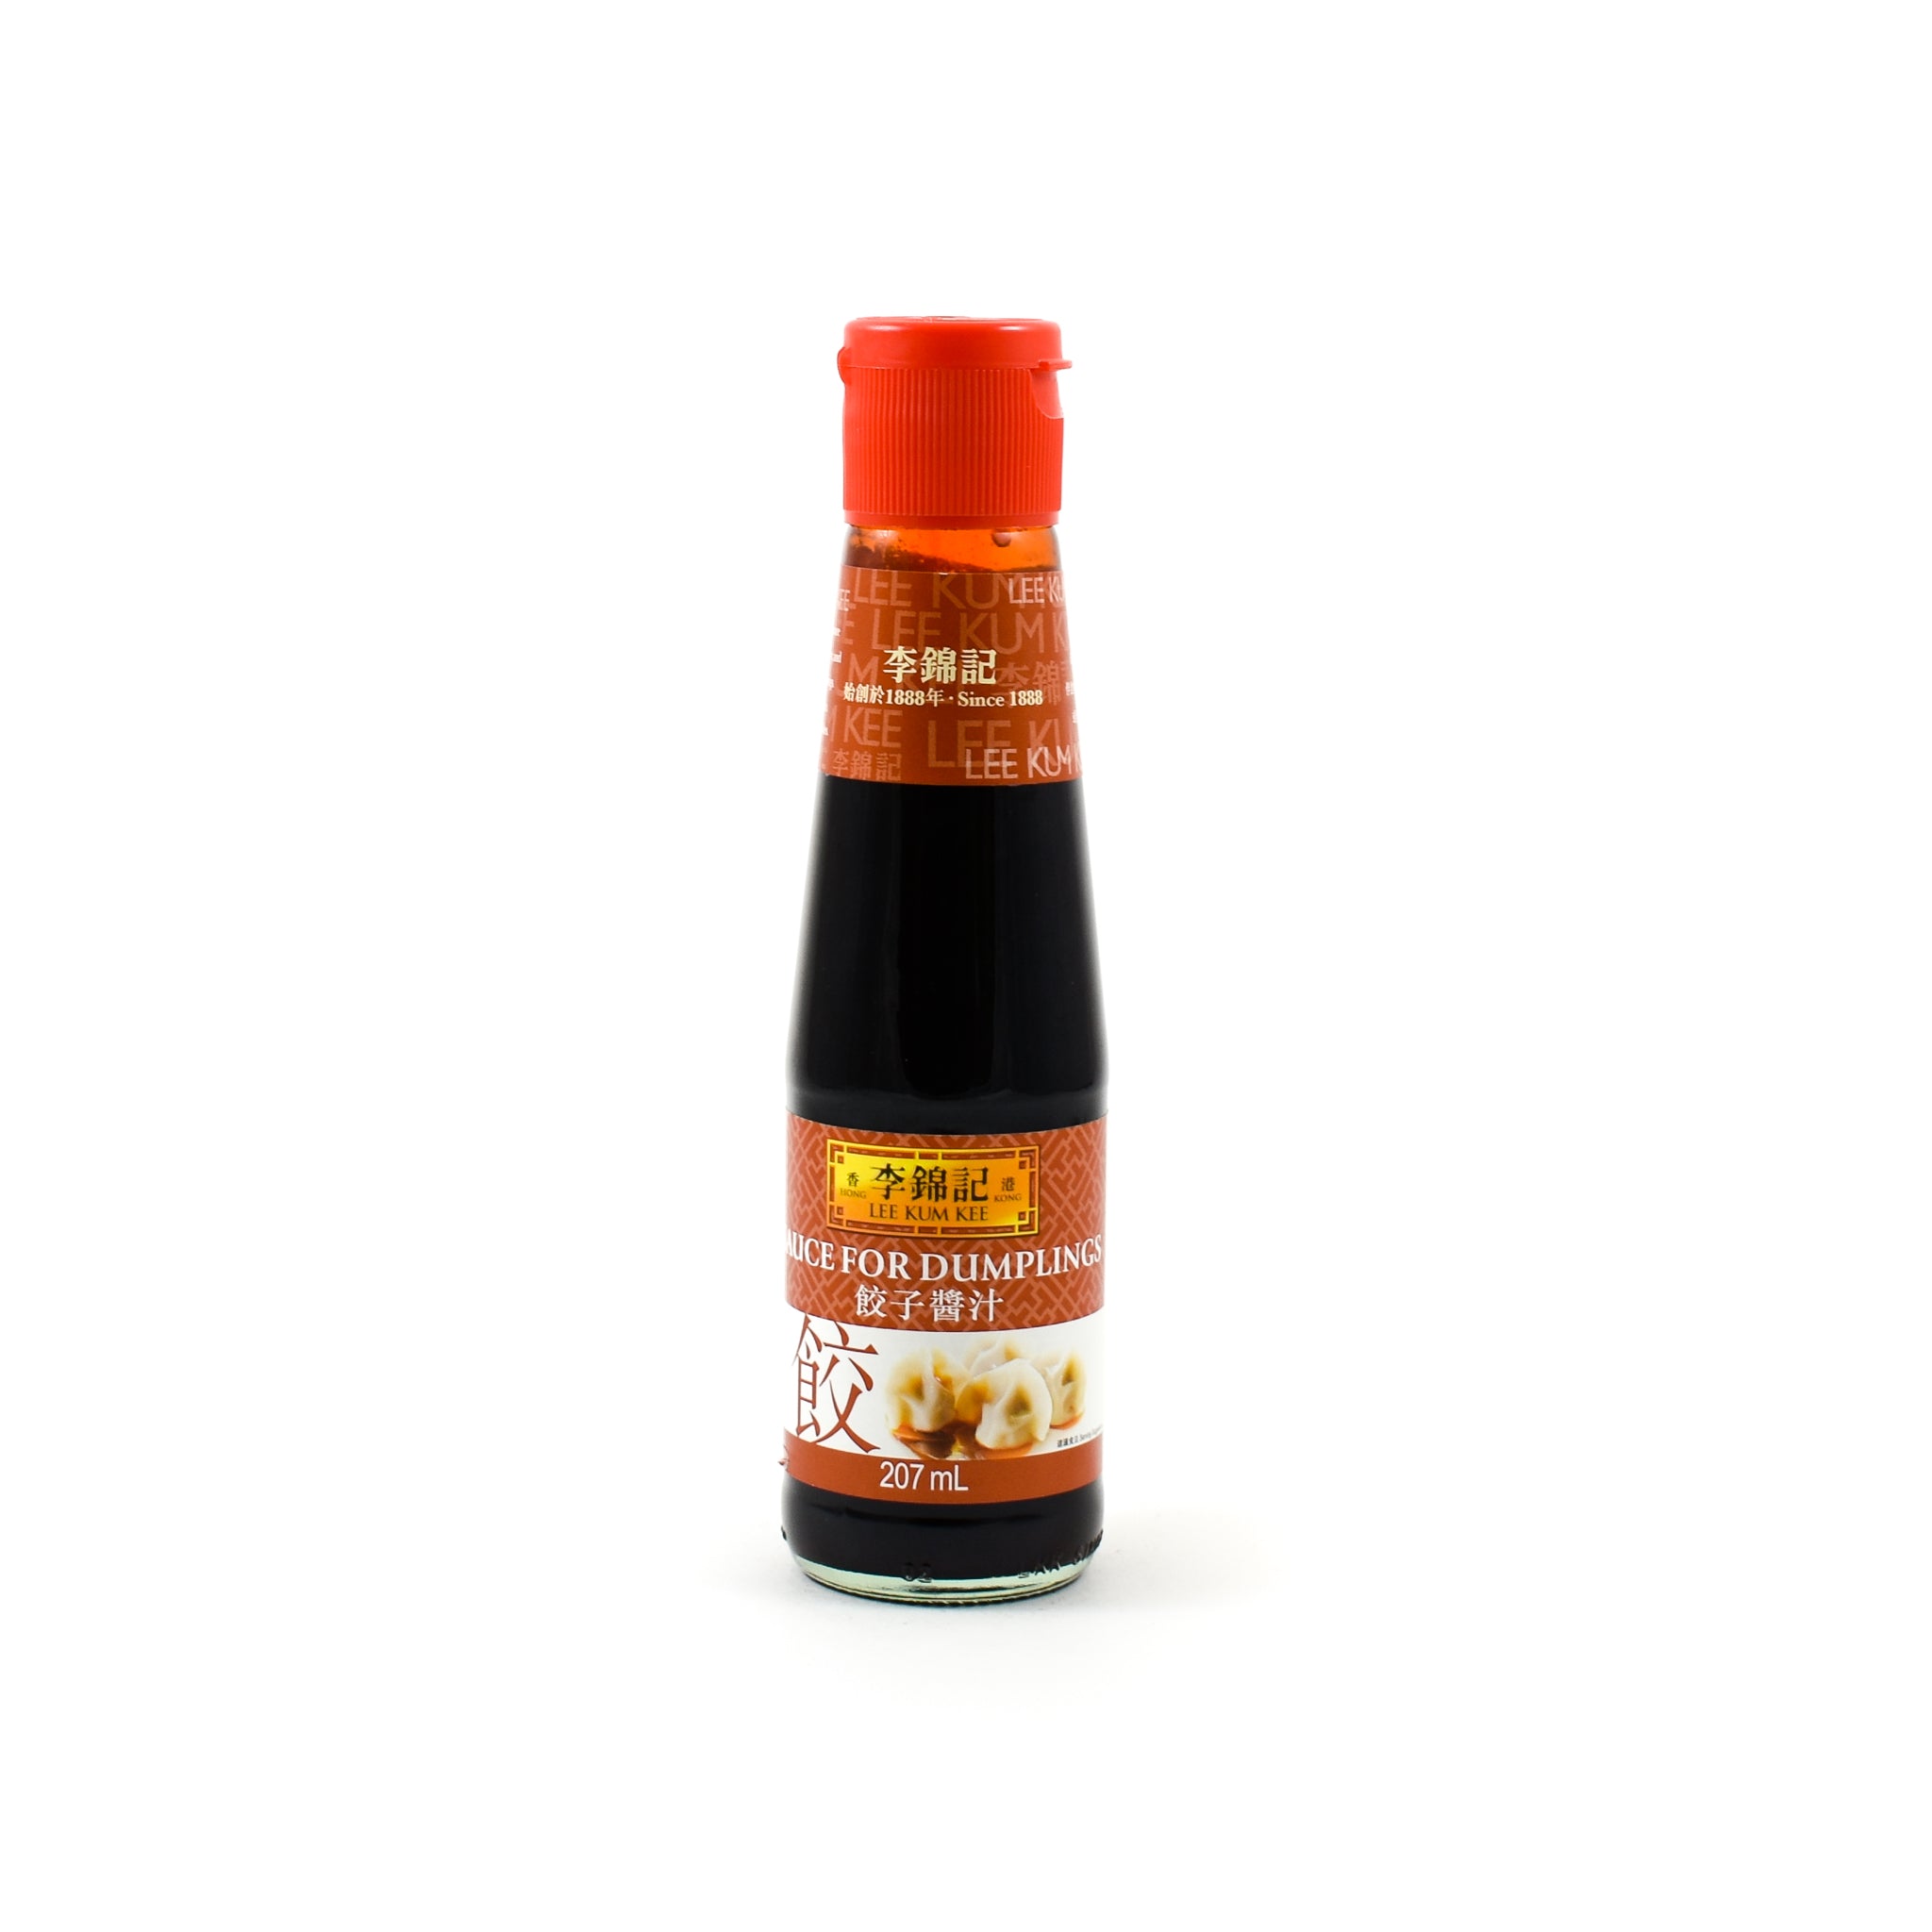 Lee Kum Kee Sauce for Dumpling 270ml Ingredients Sauces & Condiments Asian Sauces & Condiments Chinese Food